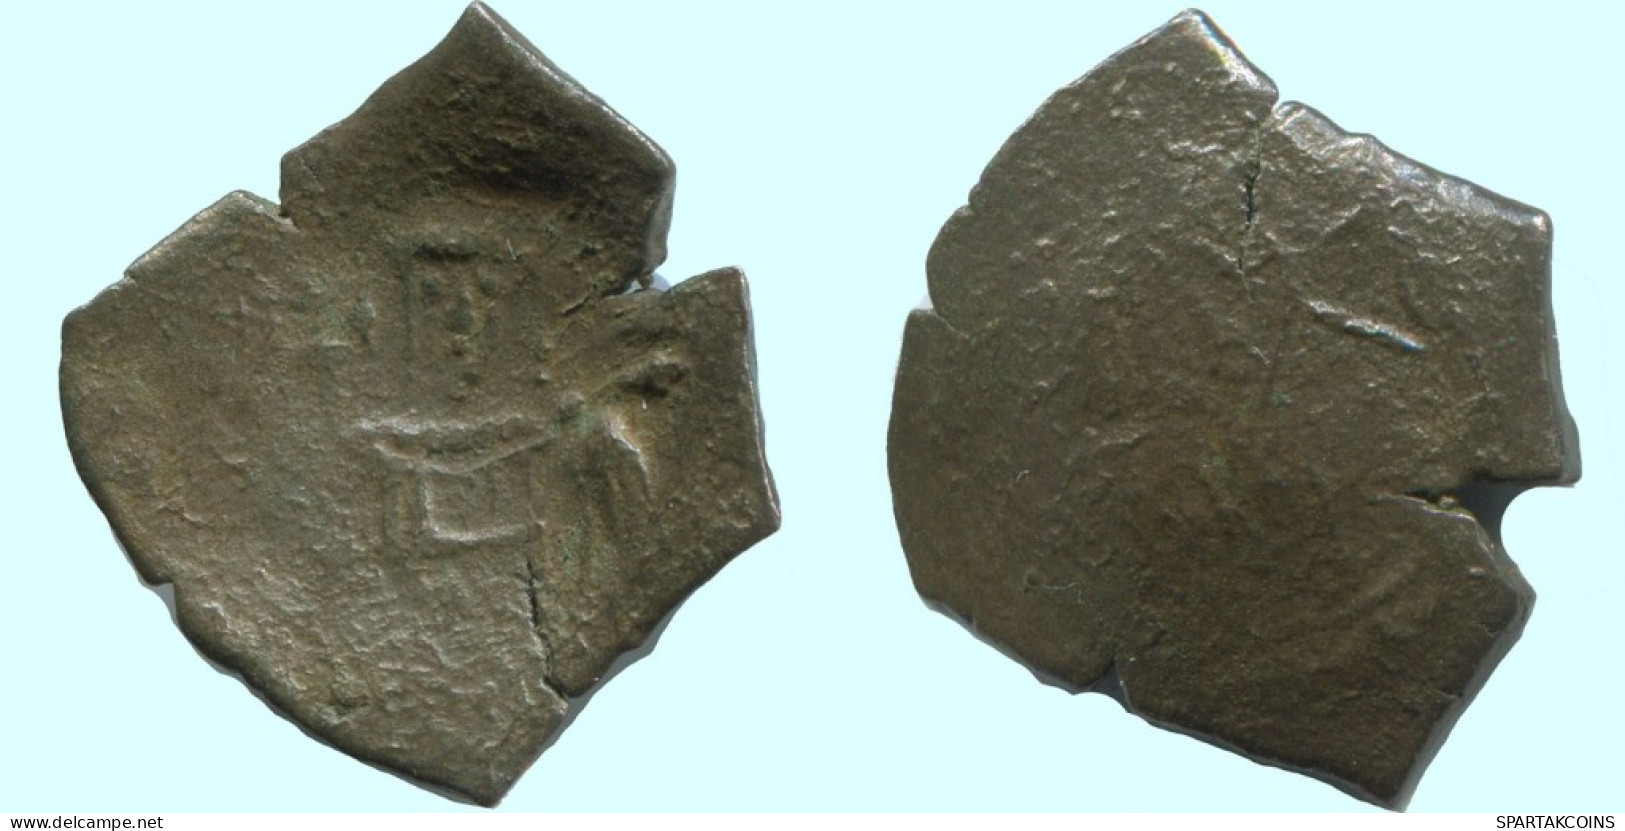 TRACHY BYZANTINISCHE Münze  EMPIRE Antike Authentisch Münze 2.1g/21mm #AG630.4.D.A - Byzantinische Münzen